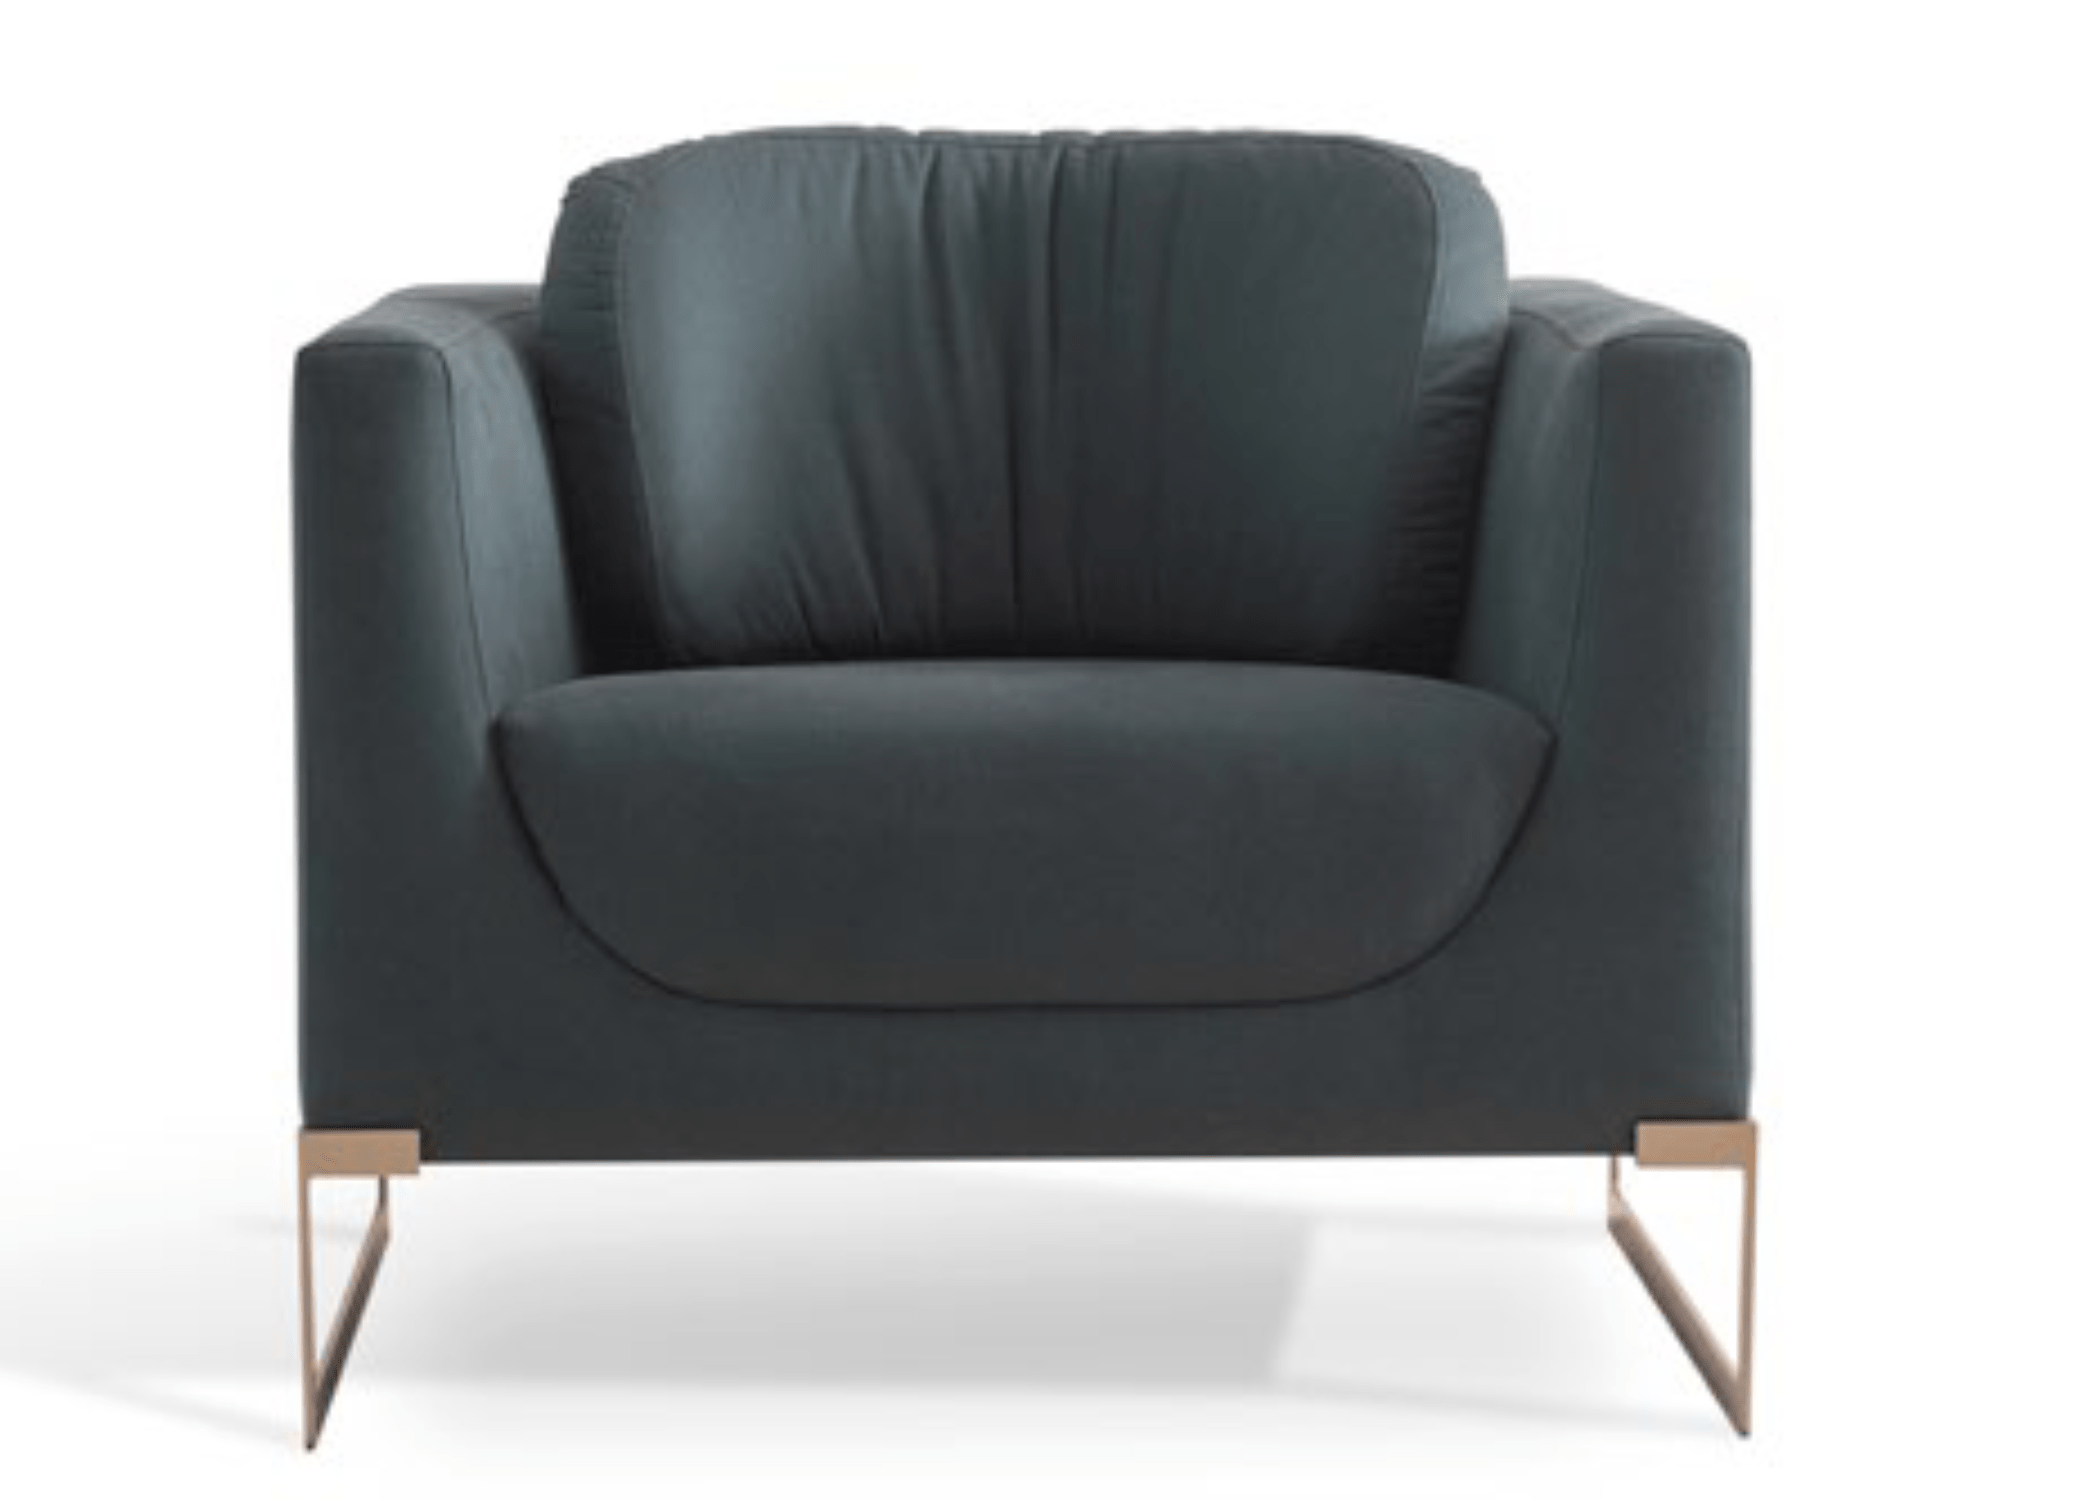 Poltrona Miranda: linhas retas e proporções precisas para um assento confortável e elegante.